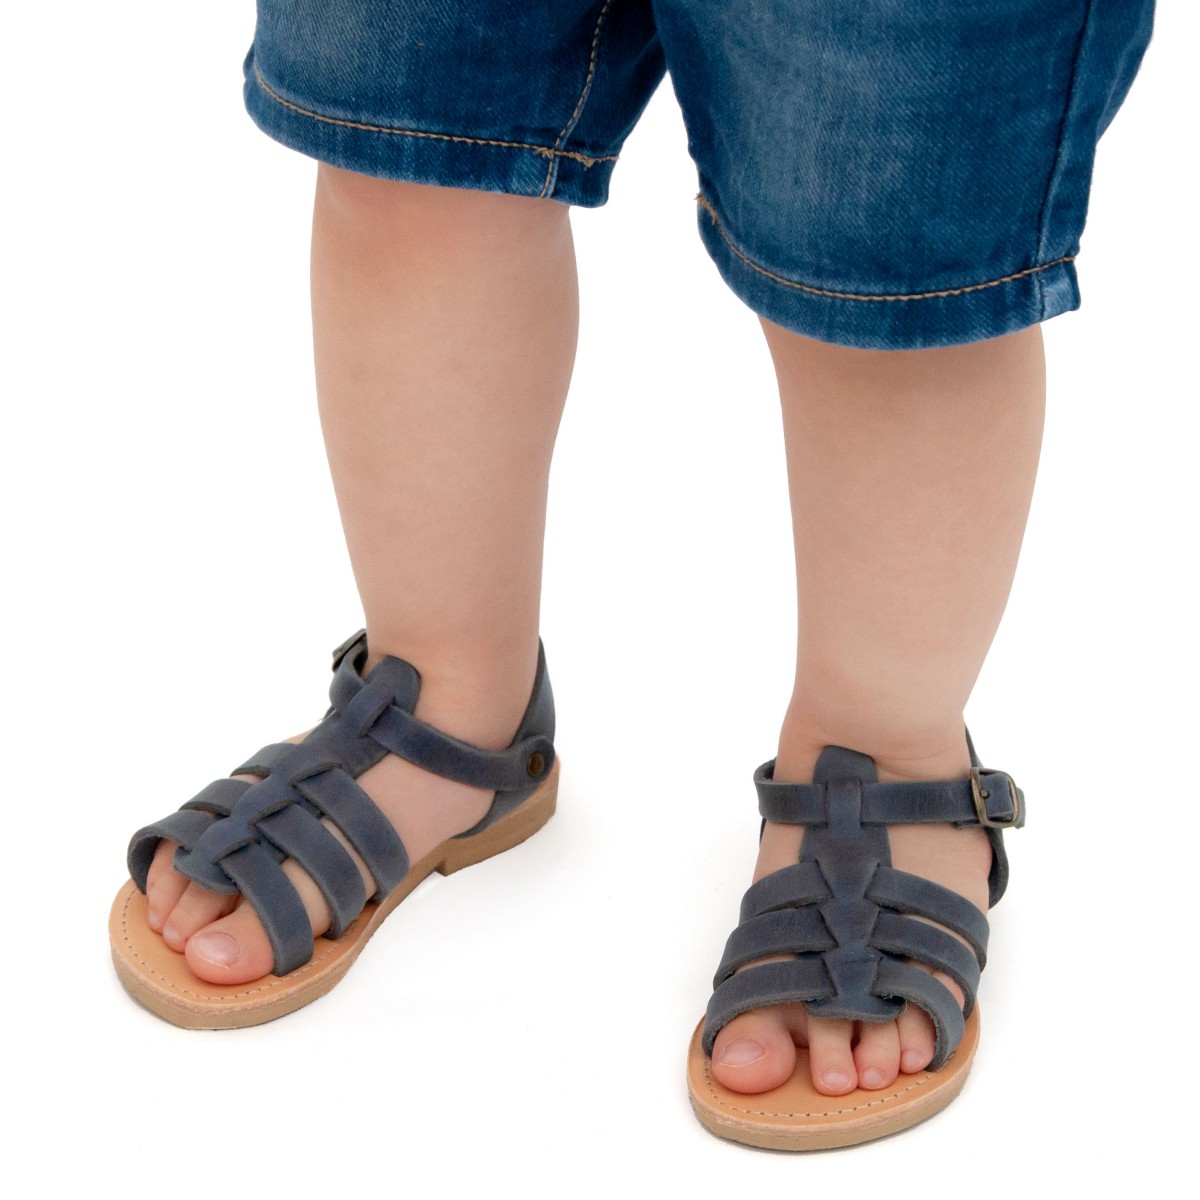 Zapatos Zapatos para niño Sandalias Sandalias para niño en piel nobuck azul con cierre de hebilla Attica sandals 